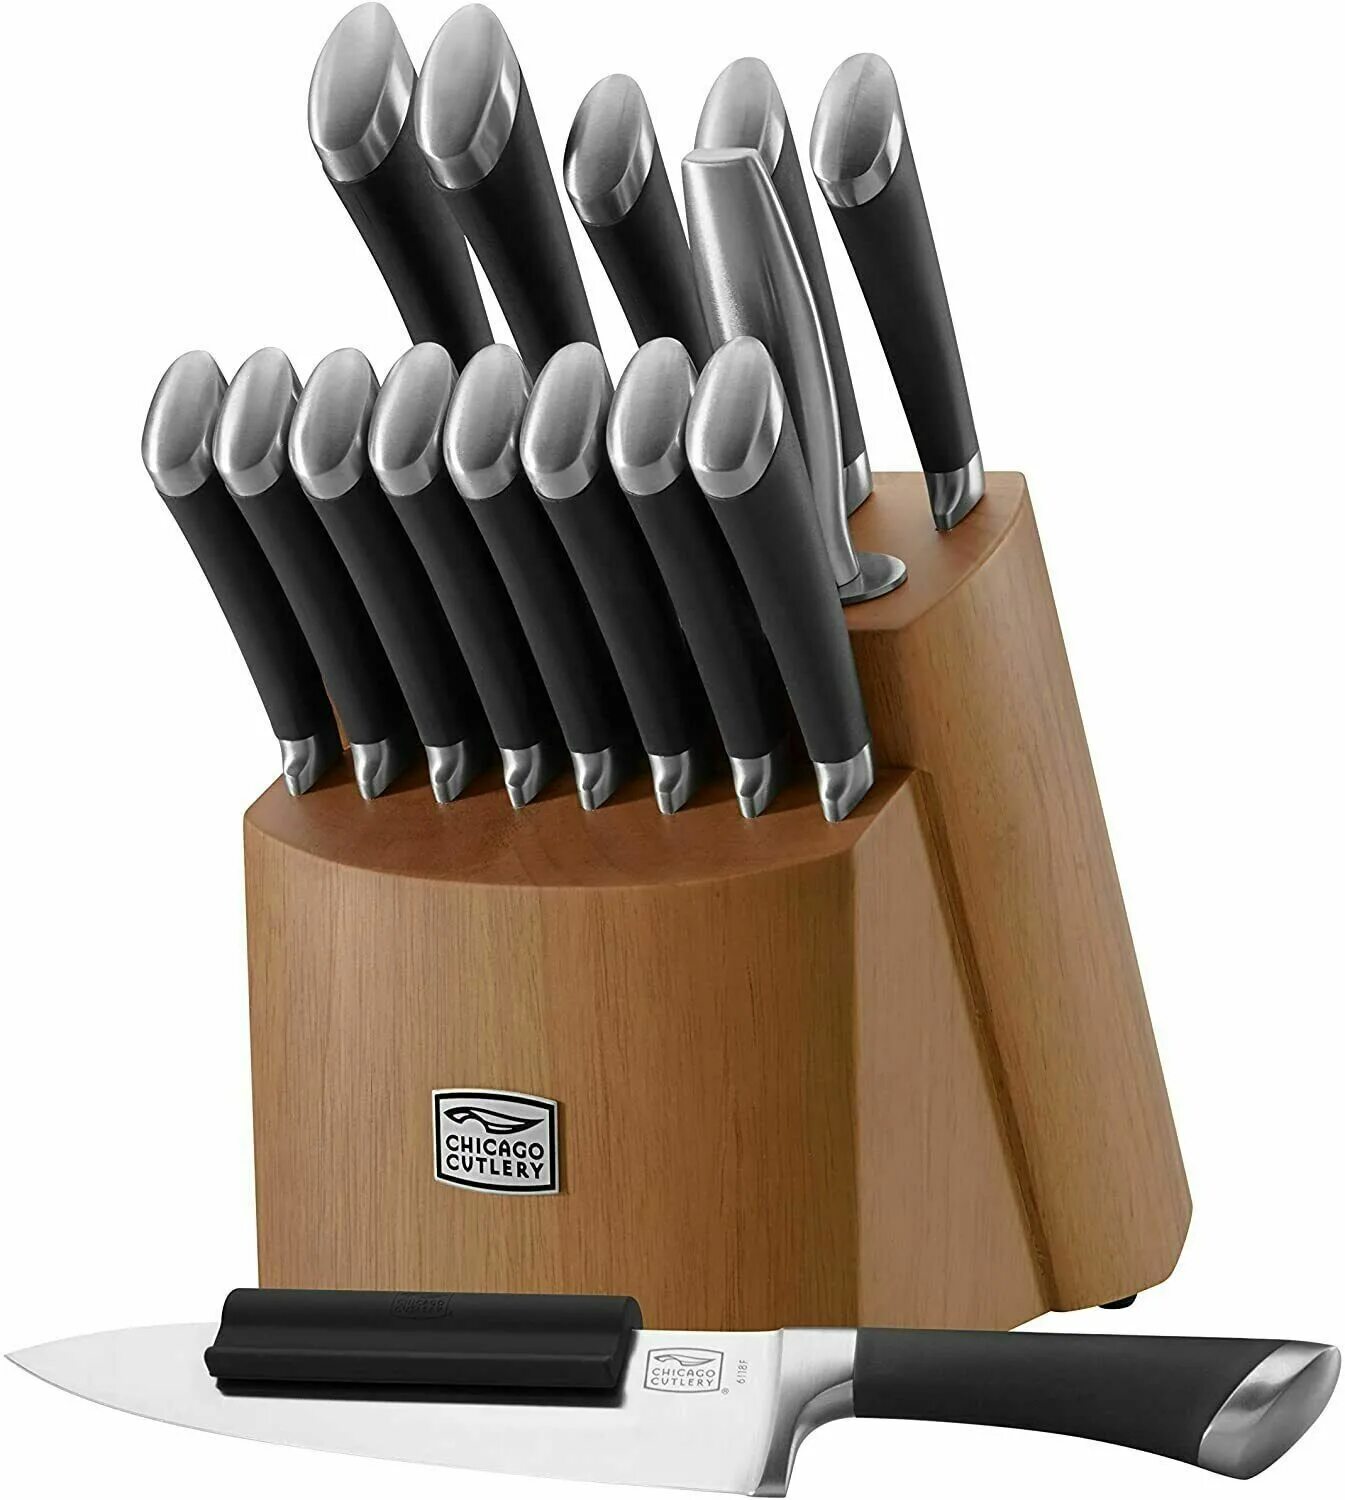 Хороший набор кухонных ножей. Cutlery Stainless Steel кухонный нож. Cutlery Stainless Steel кухонный нож твердас сталь. Лучшие наборы ножей для кухни. Набор ножей Kitchen.